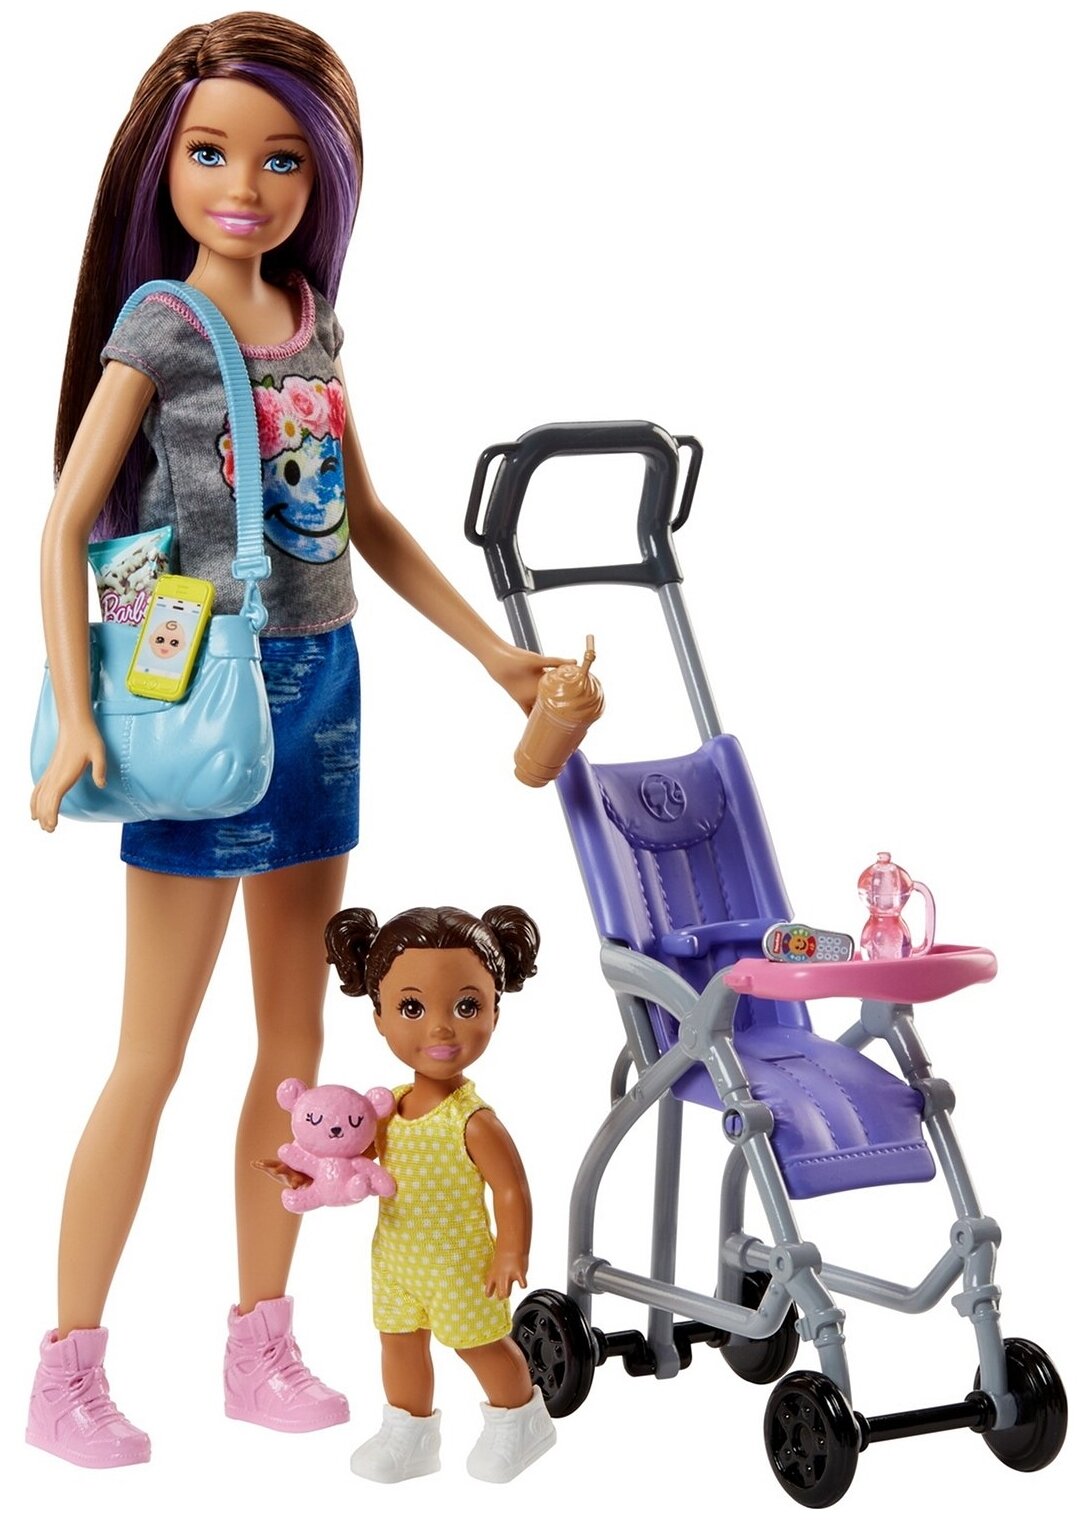 Набор игровой Barbie Няня Скиппер 2 куклы с аксессуарами Прогулка в коляске FJB00